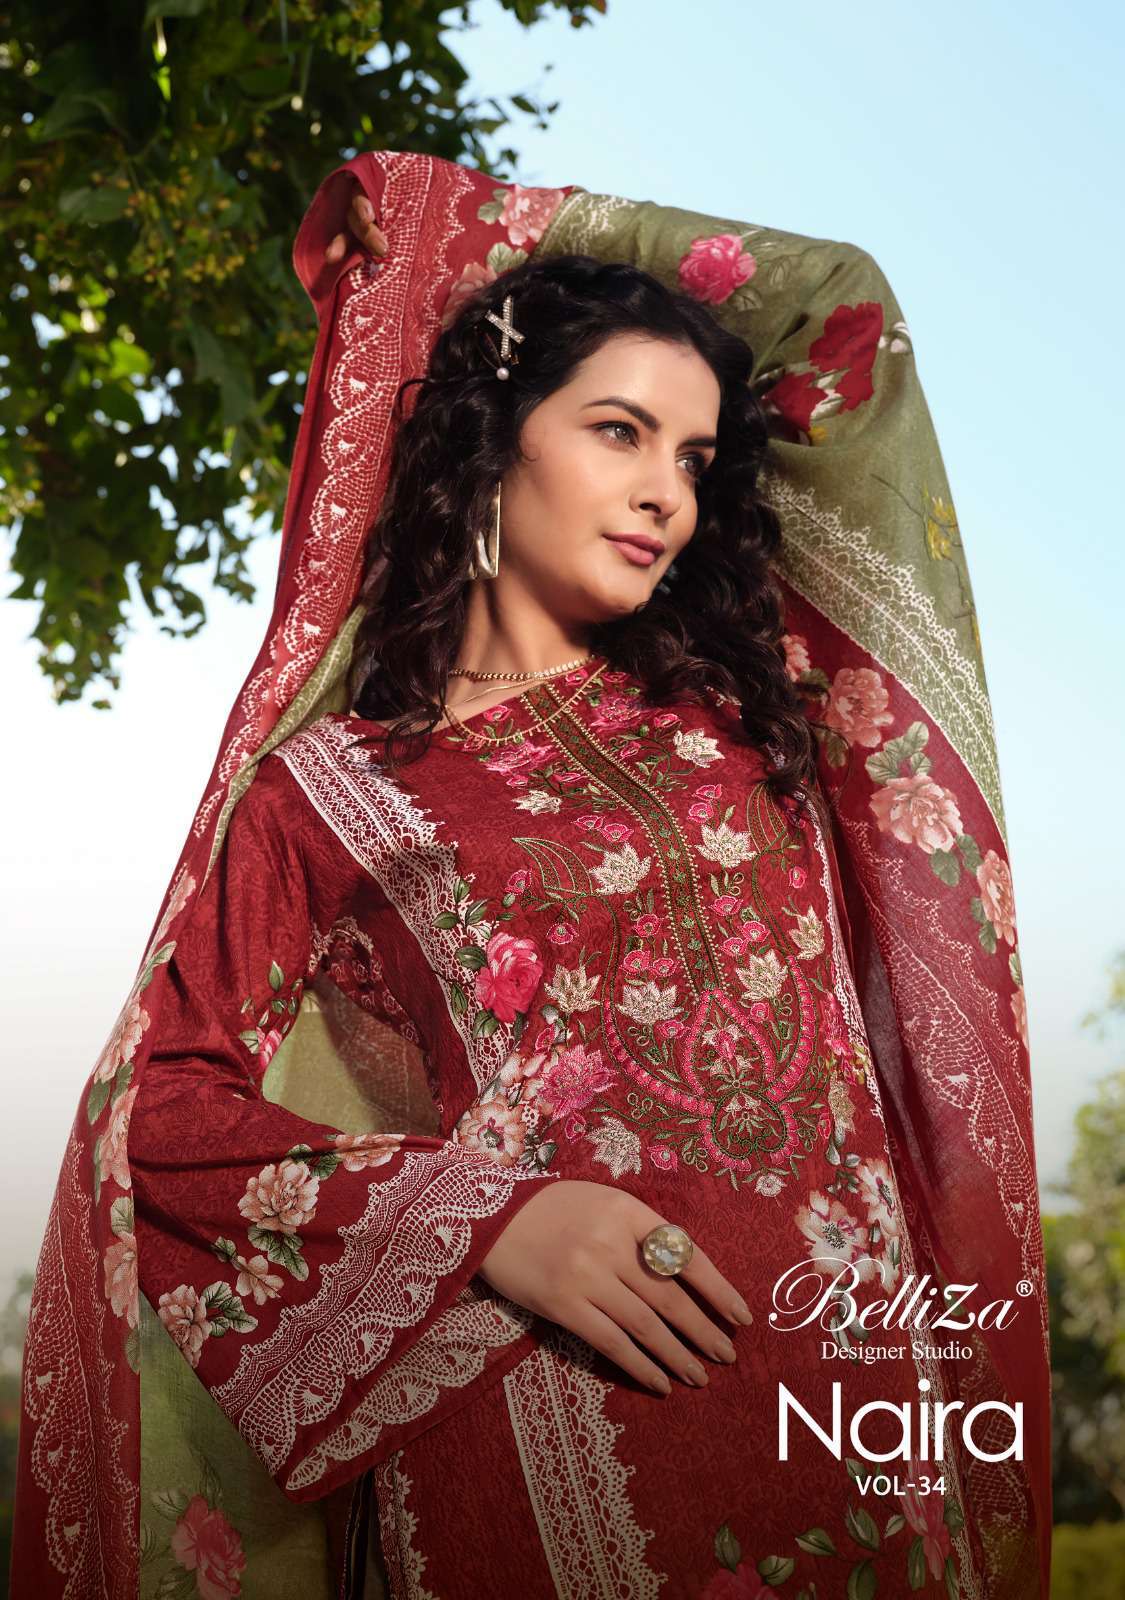 Belliza Naira Vol 34 Premium Designs Cotton Salwar Kameez Summer Collection